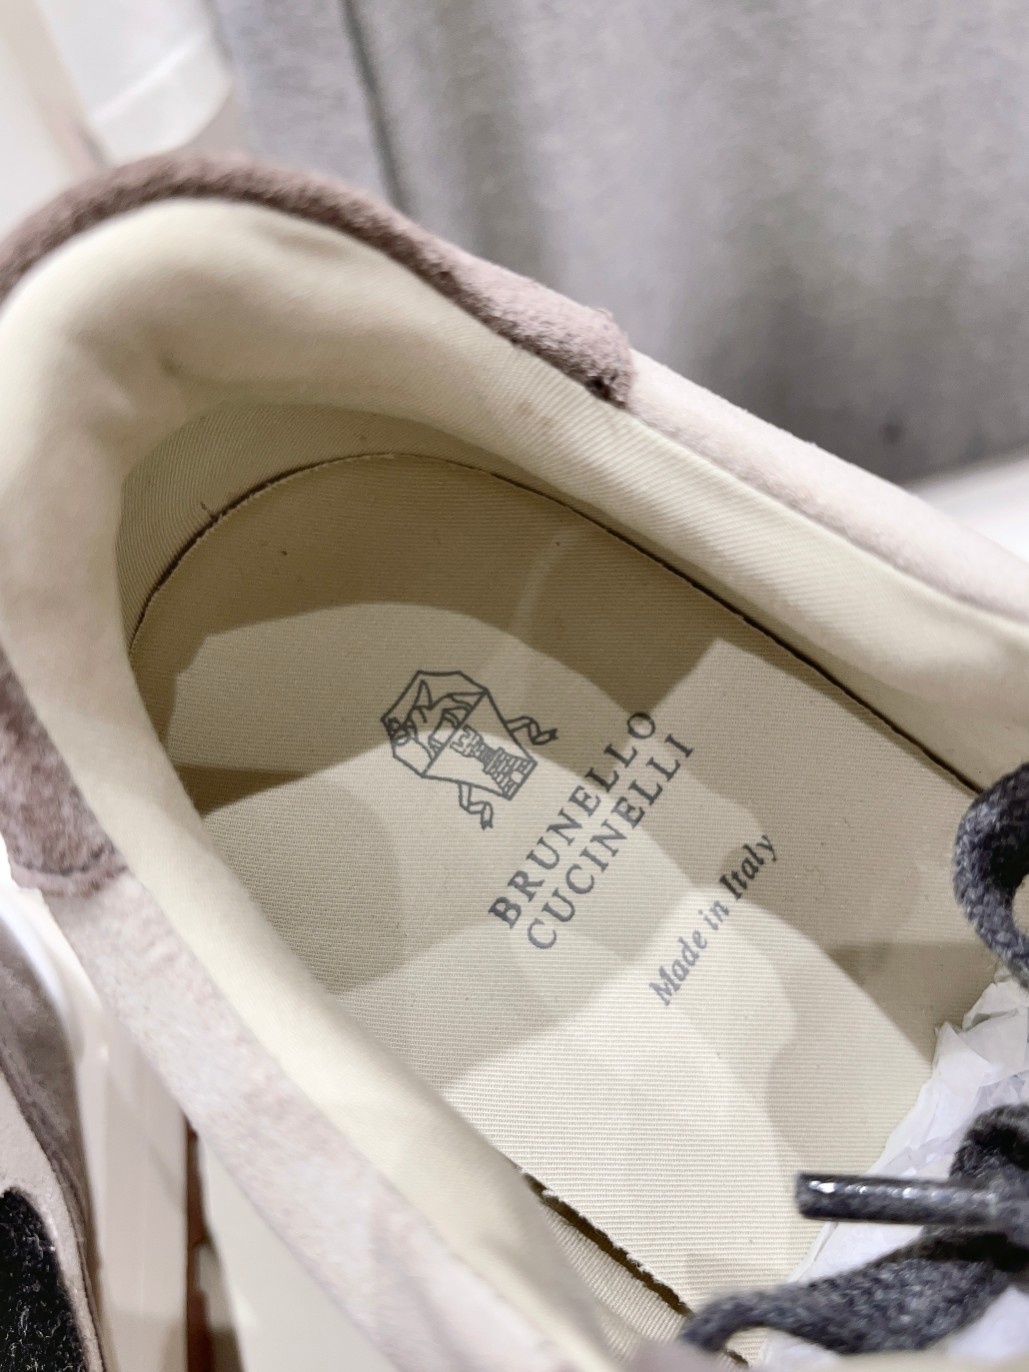 高版本出厂BrunelloCucinelli新款BC经典休闲鞋运动鞋系列单鞋BC是意大利知名品牌极简主义